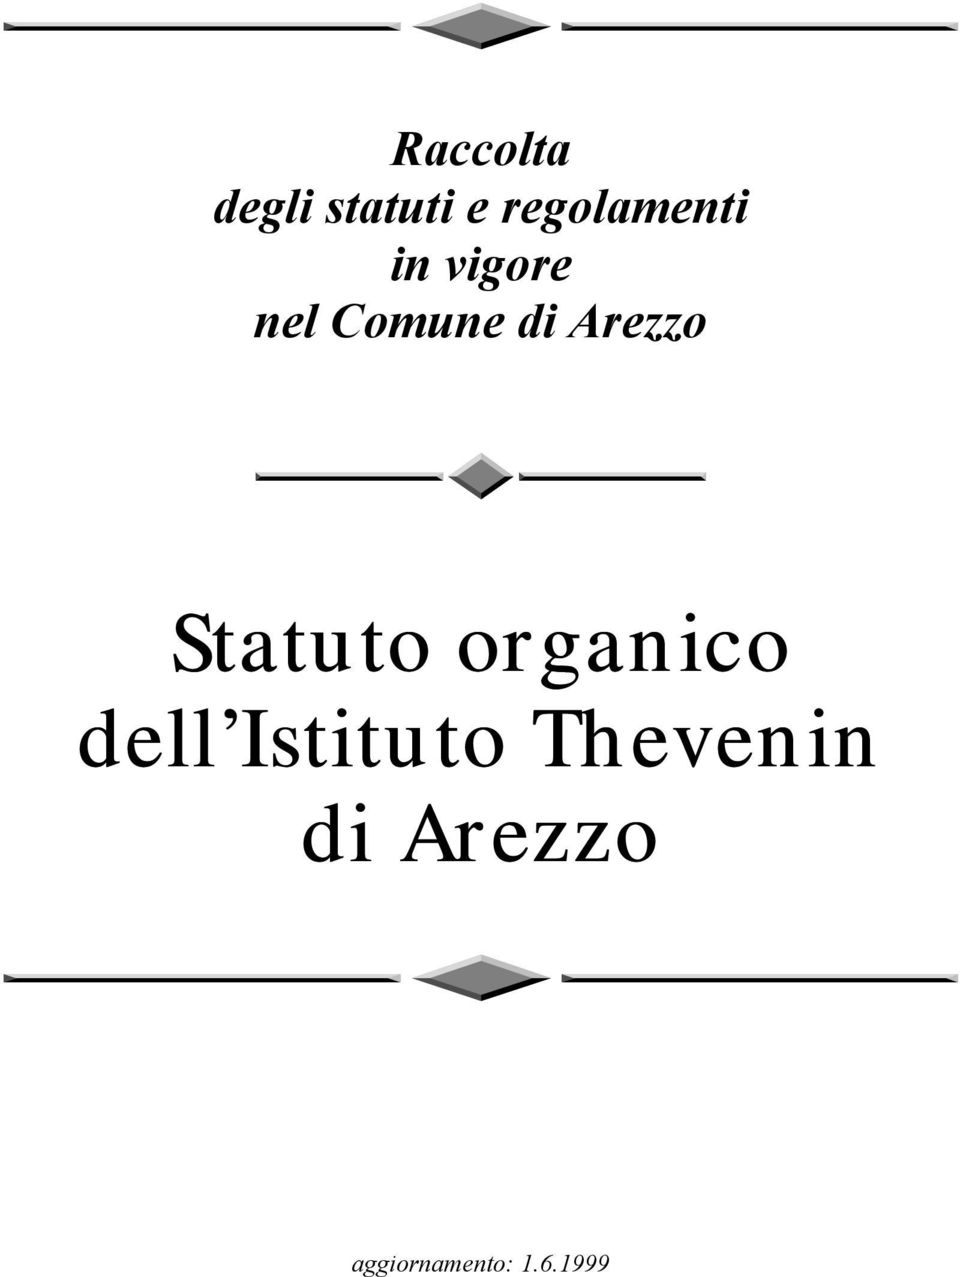 Arezzo Statuto organico dell